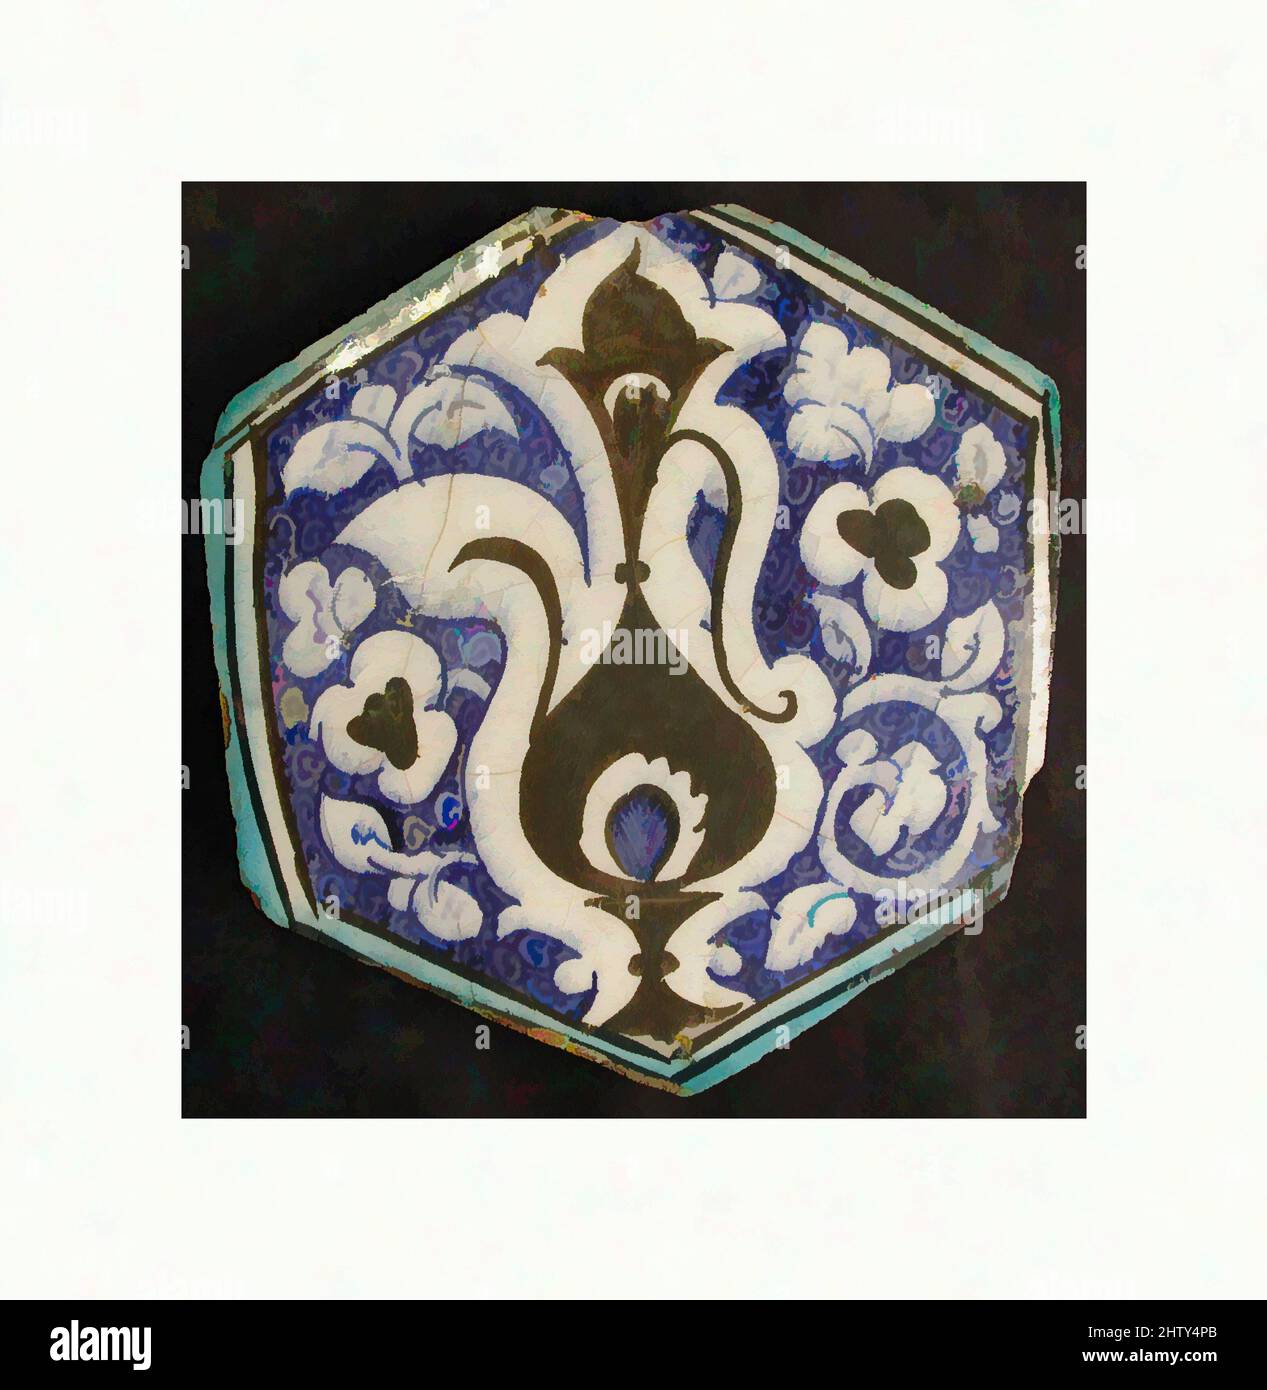 Arte ispirata dalla piastrella esagonale, prima metà del 15th secolo, attribuita alla Siria, corpo composito; smalto dipinto, HT. 7 1/8 poll. (18,1 cm), Ceramics-Tiles, lo sfondo di spirali strettamente avvolte e l'uso di pigmenti nero, blu e turchese underglaze tradiscono la provenienza siriana, opere classiche modernizzate da Artotop con un tuffo di modernità. Forme, colore e valore, impatto visivo accattivante sulle emozioni artistiche attraverso la libertà delle opere d'arte in modo contemporaneo. Un messaggio senza tempo che persegue una nuova direzione selvaggiamente creativa. Artisti che si rivolgono al supporto digitale e creano l'NFT Artotop Foto Stock